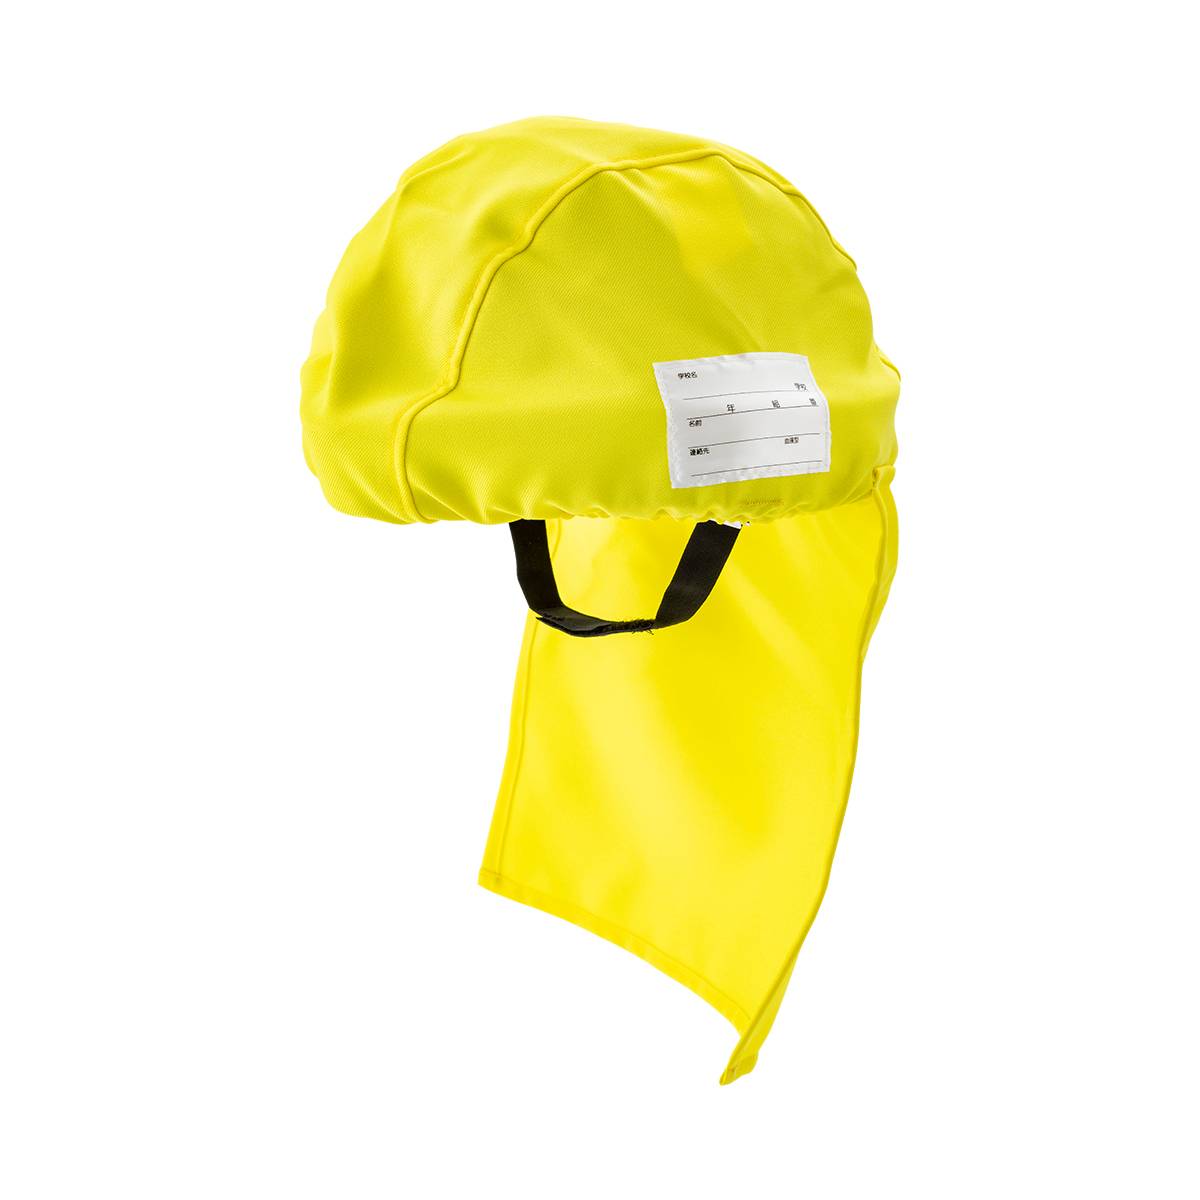 でるキャップ for kids 【イエロー】 タイカ 避難用簡易保護帽